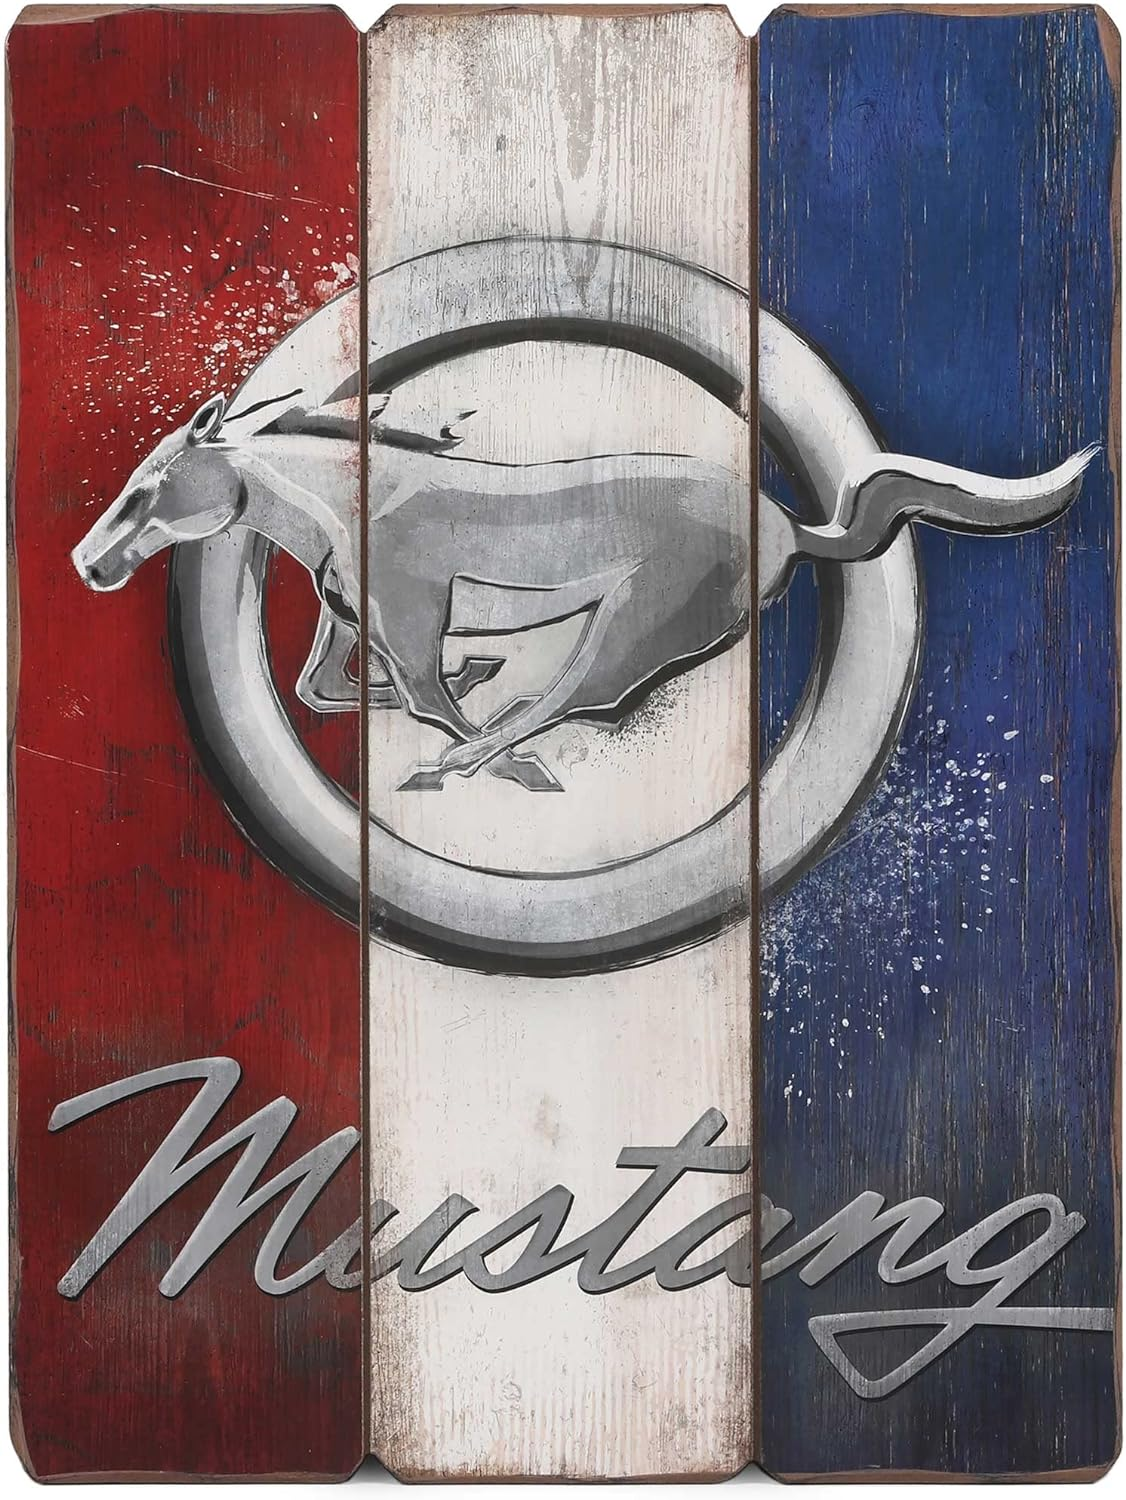 Ford Mustang Wanddeko: Holzschild mit Pony, Mustang Schriftzug uns USA Farben, 30x40cm